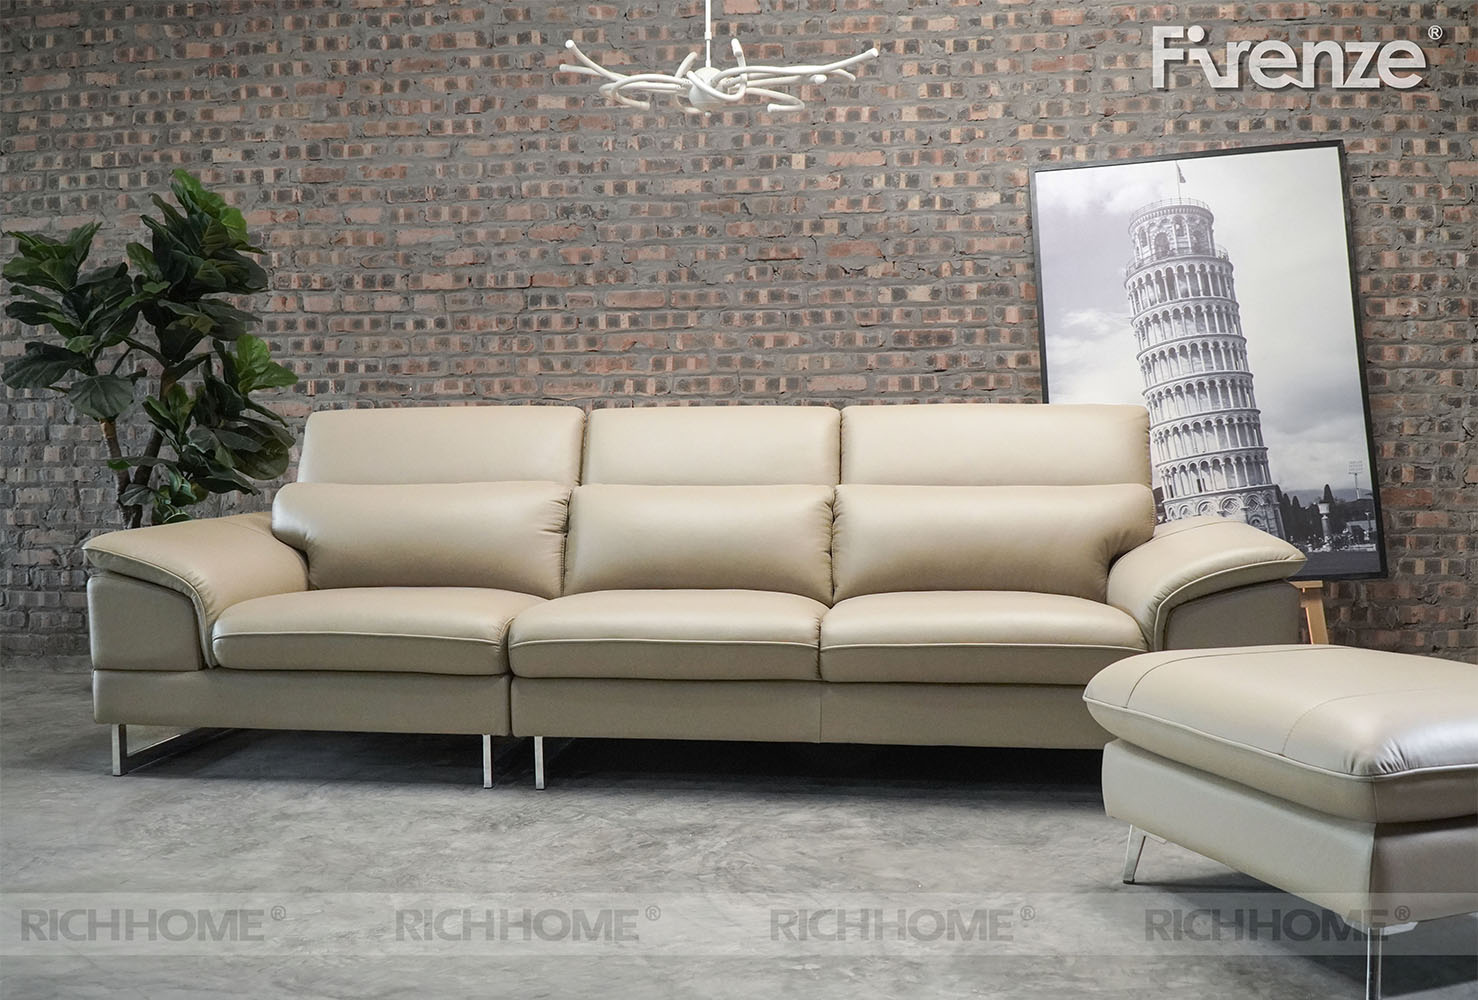 Các mẫu sofa cho căn hộ nhỏ diện tích 25m2 - Ảnh 5